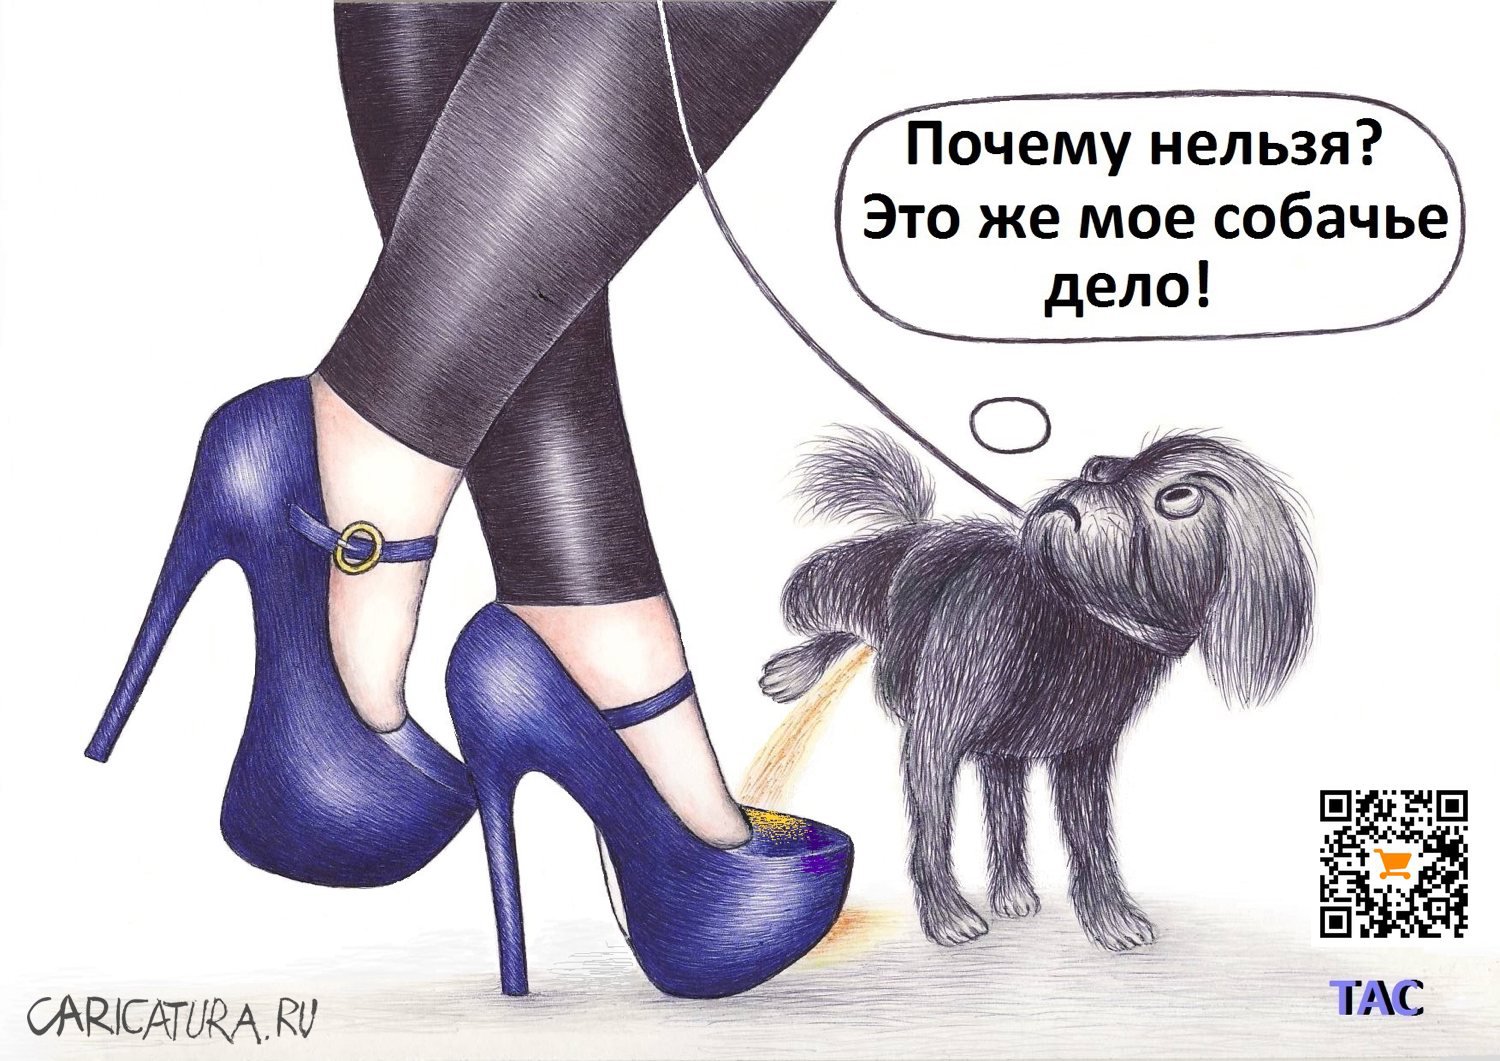 Карикатура "Собачье дело", Александр Троицкий